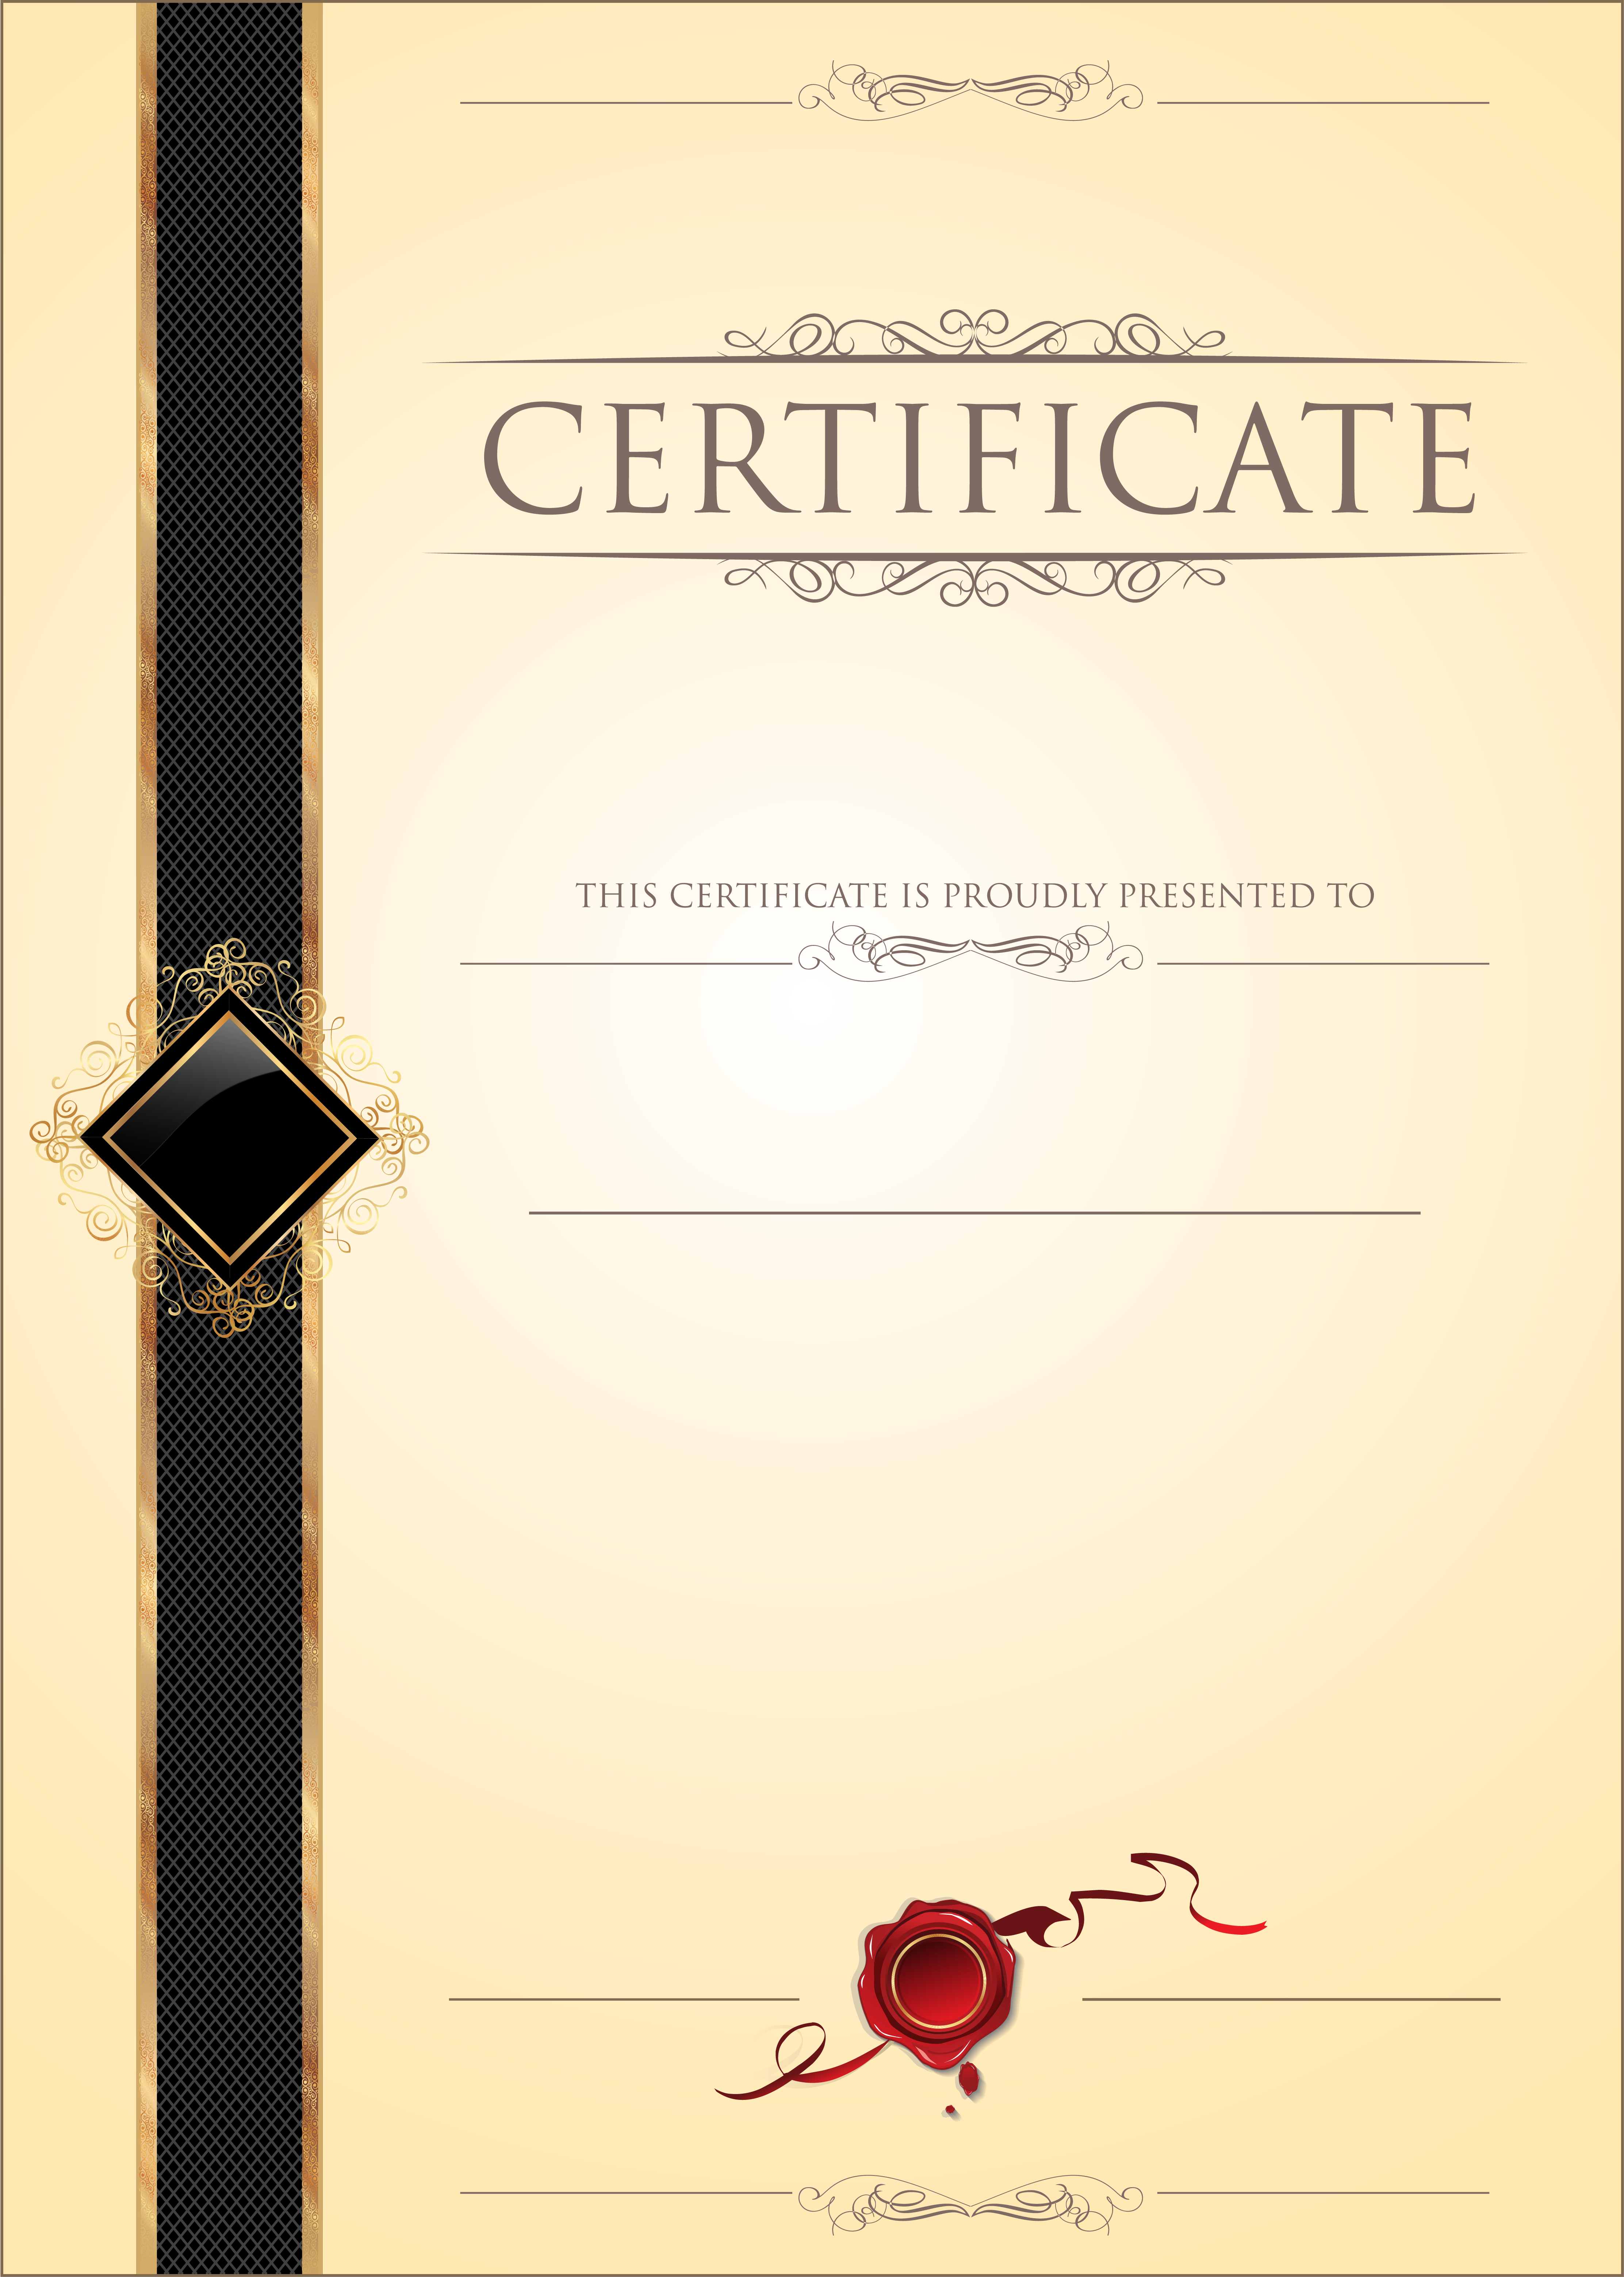 Certificate PNG File